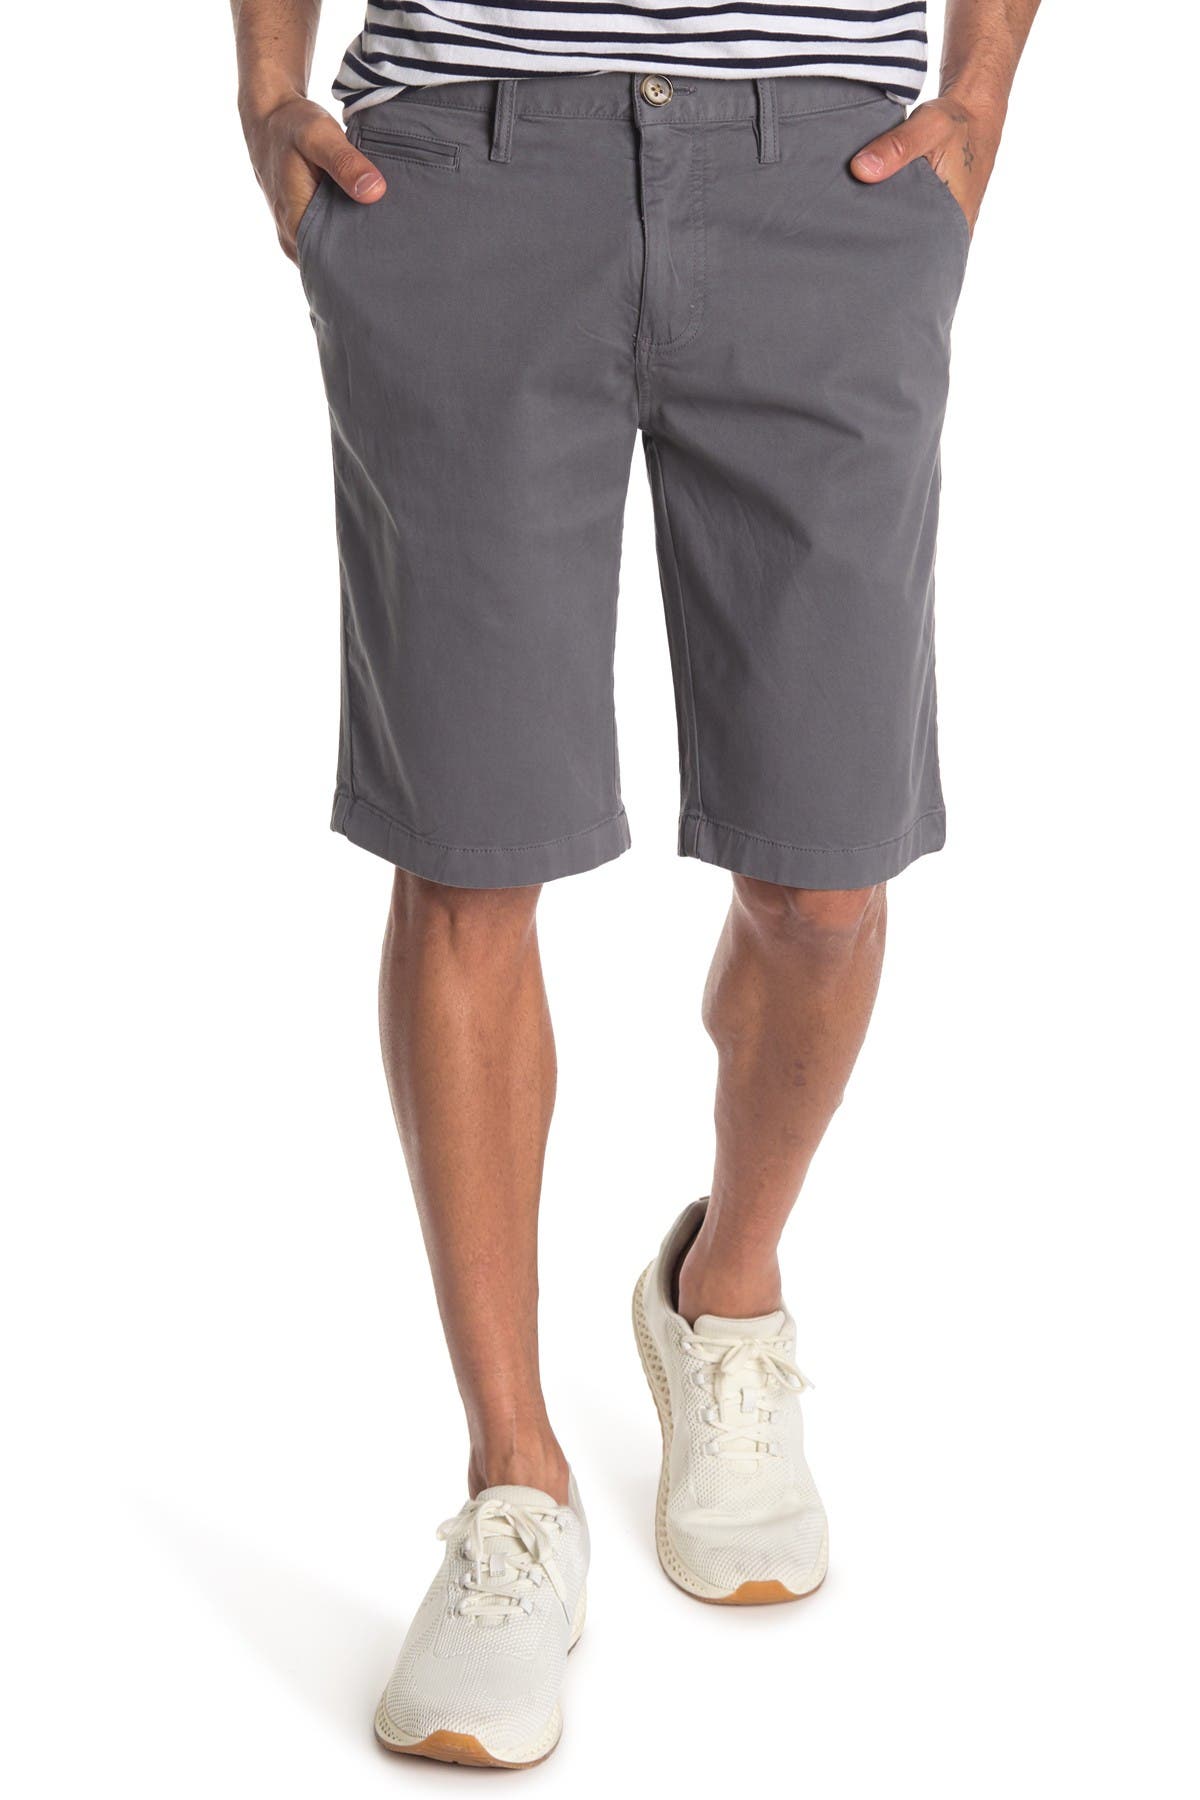 14th & Union Garment Dye Stretch Shorts In Dark Grey